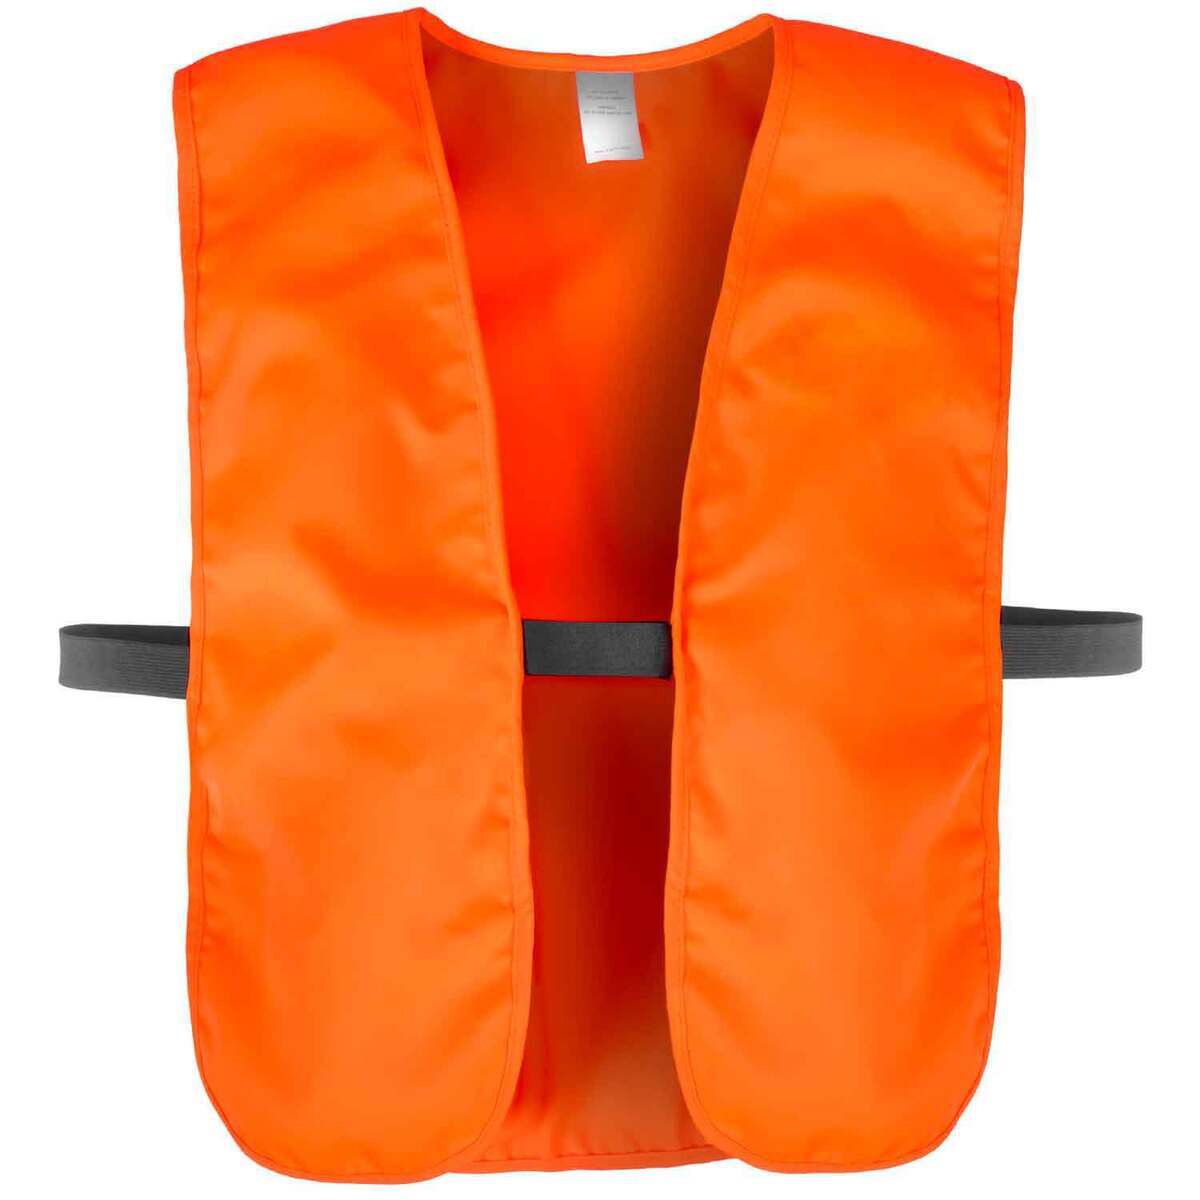 https://www.sportsmans.com/medias/sportsmans-warehouse-mens-oversized-blaze-hunting-vest-blaze-orange-xxl-4xl-1520388-1.jpg?context=bWFzdGVyfGltYWdlc3w0NjI2MHxpbWFnZS9qcGVnfGFETmhMMmhtWkM4eE1EZzRPREExTmpnMk5EYzVPQzh4TlRJd016ZzRMVEZmWW1GelpTMWpiMjUyWlhKemFXOXVSbTl5YldGMFh6RXlNREF0WTI5dWRtVnljMmx2YmtadmNtMWhkQXw0NDEzNjcyNGZjMmJkN2IzMWMxODY5MzRjOTE0YjMzMjEyYjRjMDhkN2RkYTAwMmYxNGUyNjkzNWU1ZDY4ODJk